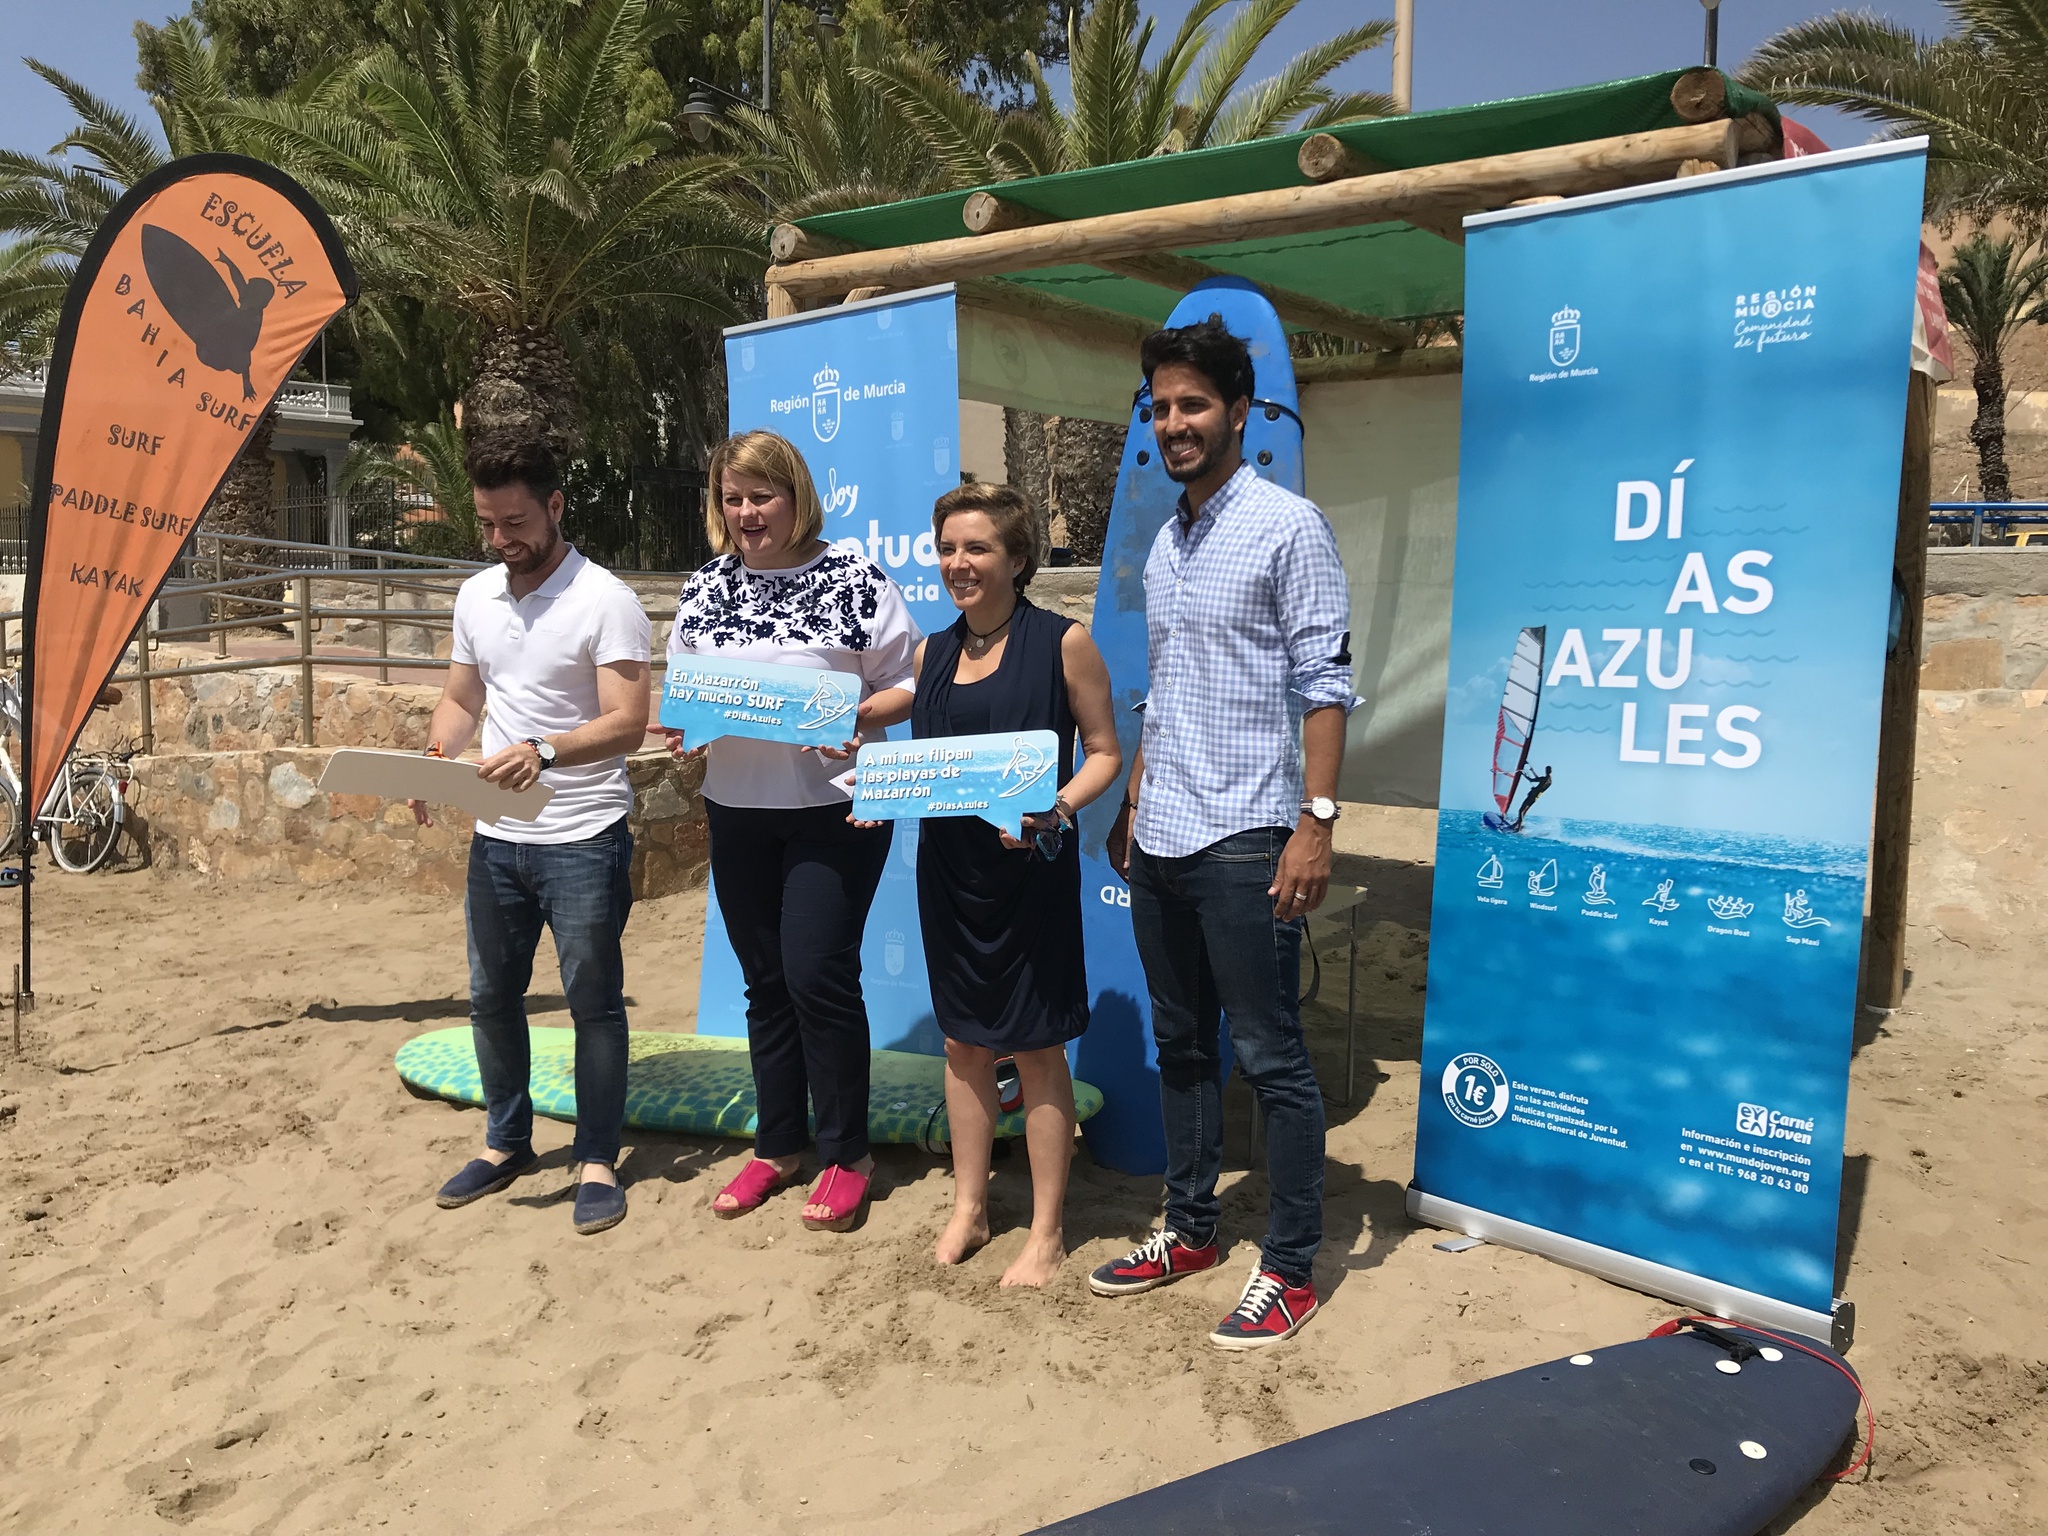 La consejera de Educación, Juventud y Deportes presenta la campaña 'Días Azules 2018' en Mazarrón